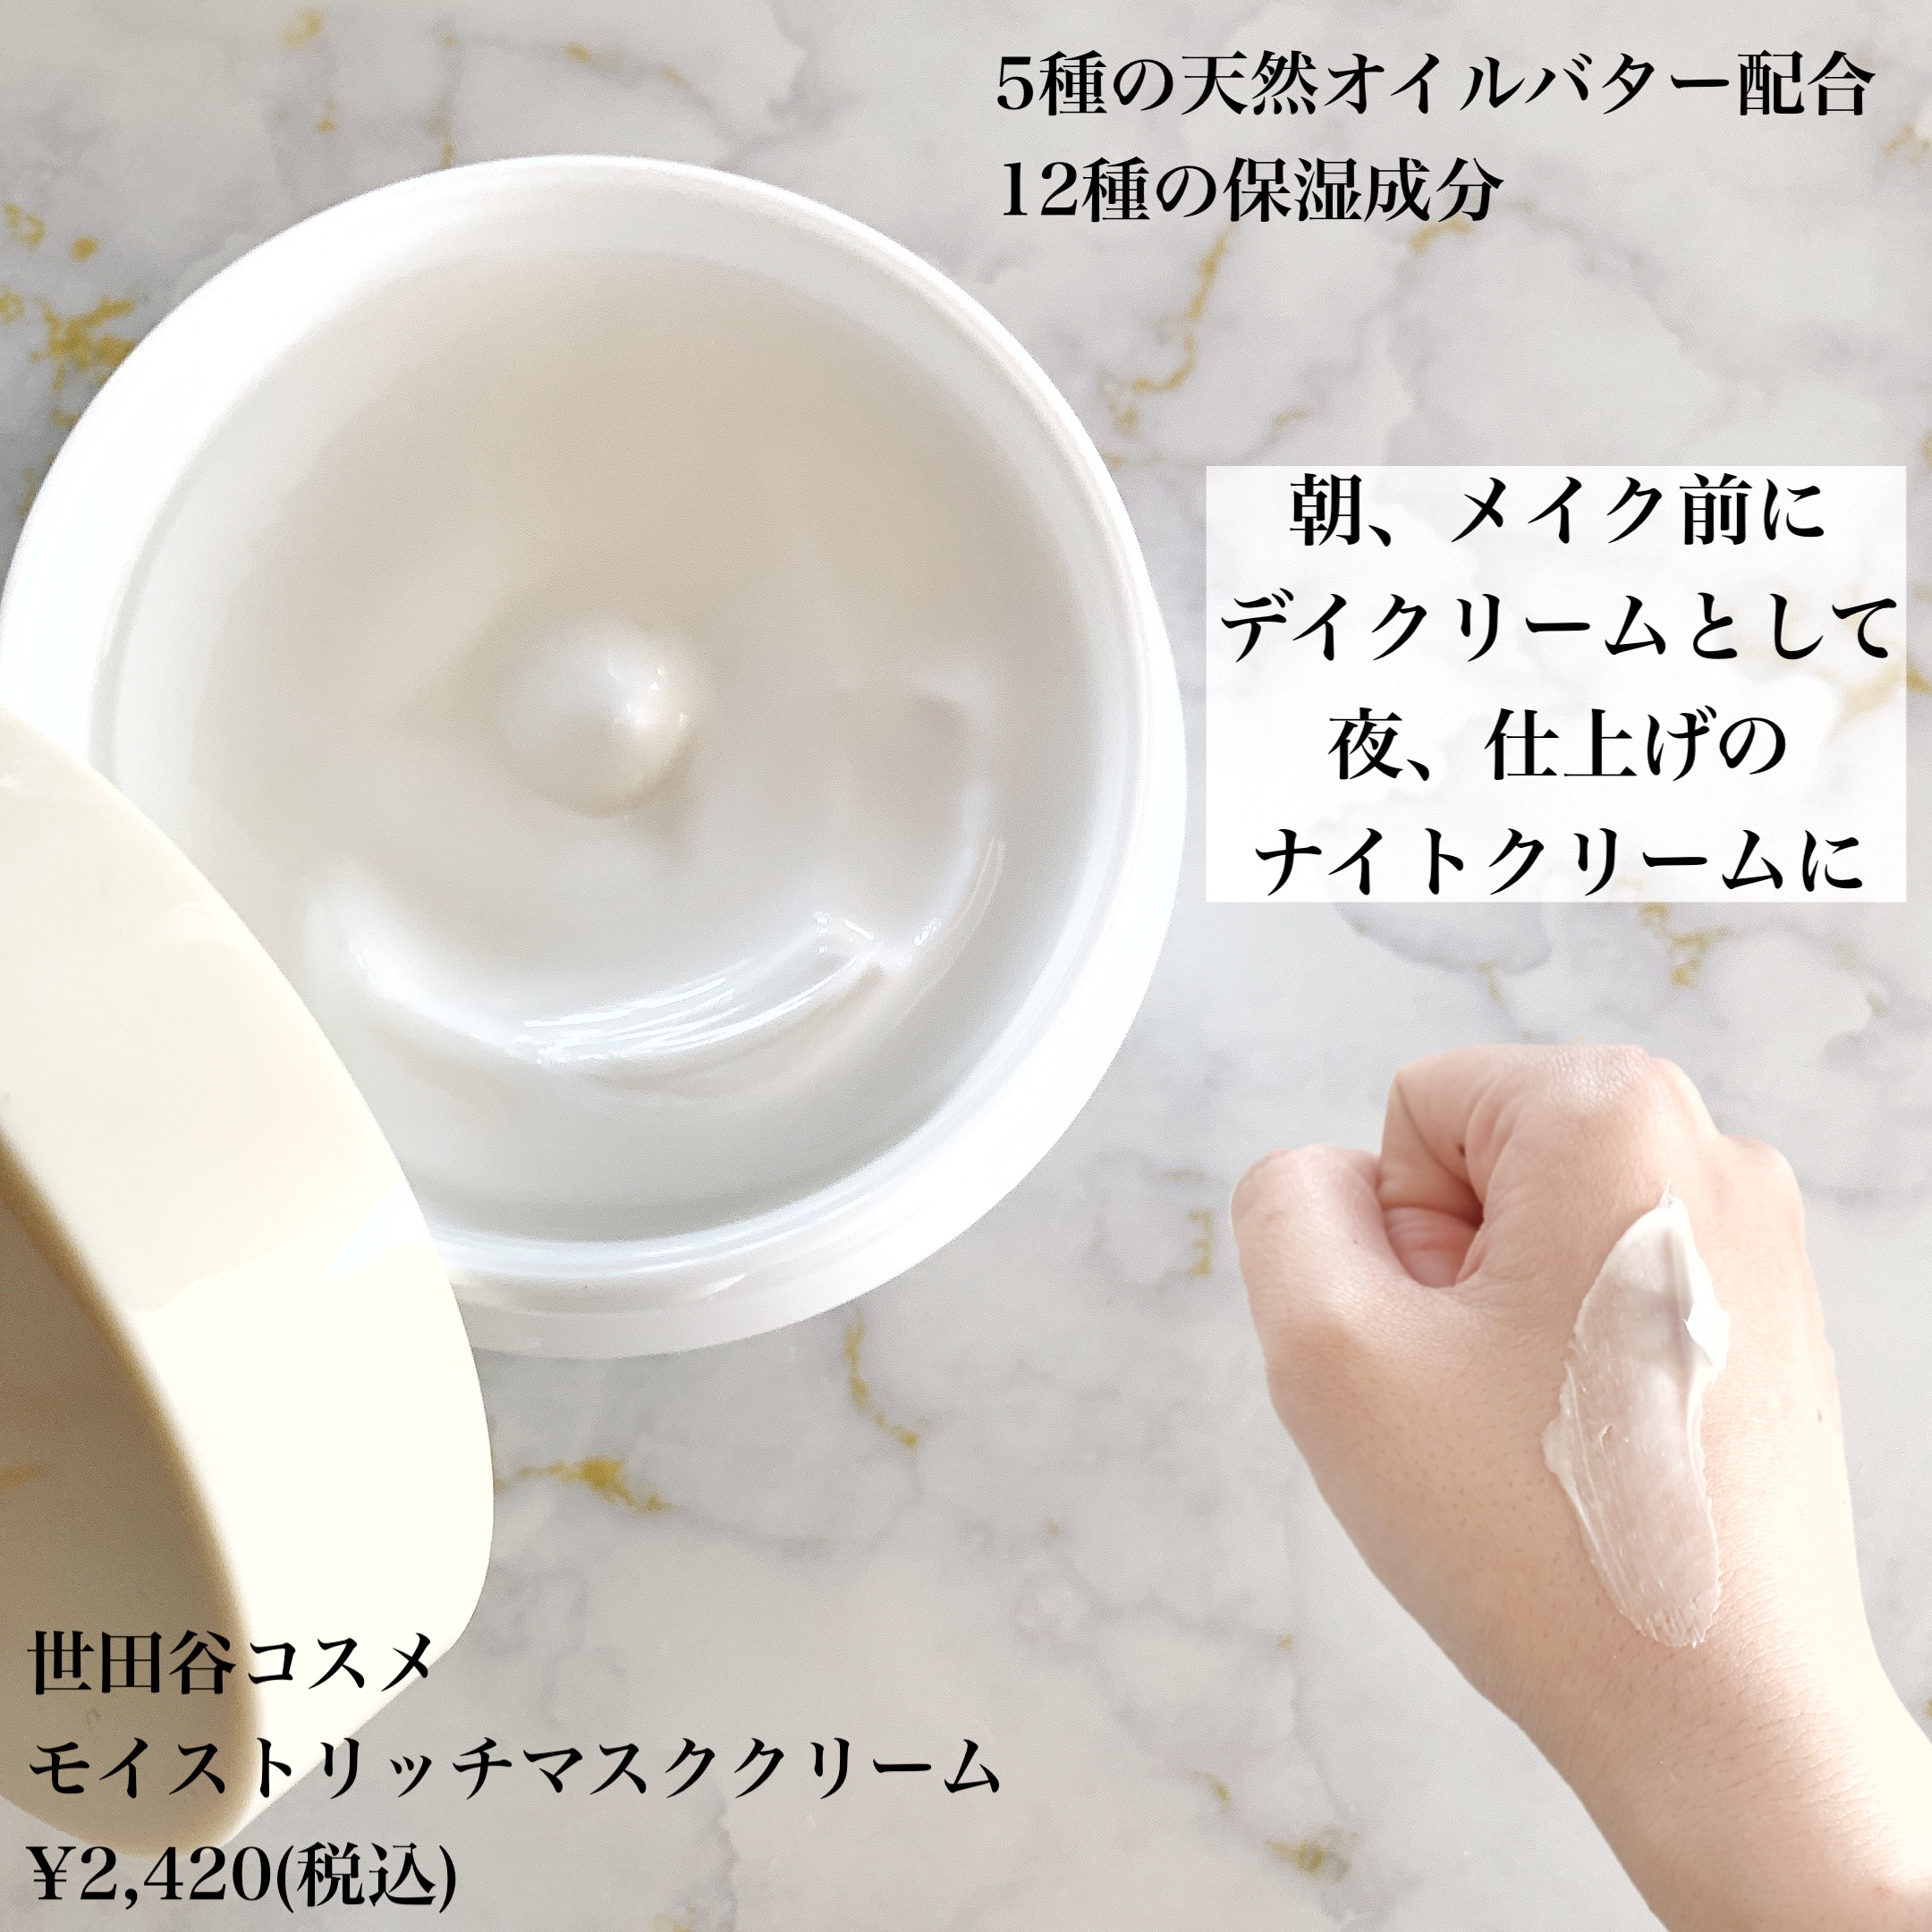 世田谷コスメ(Setagaya COSME) モイストリッチマスククリームの良い点・メリットに関するまみやこさんの口コミ画像1